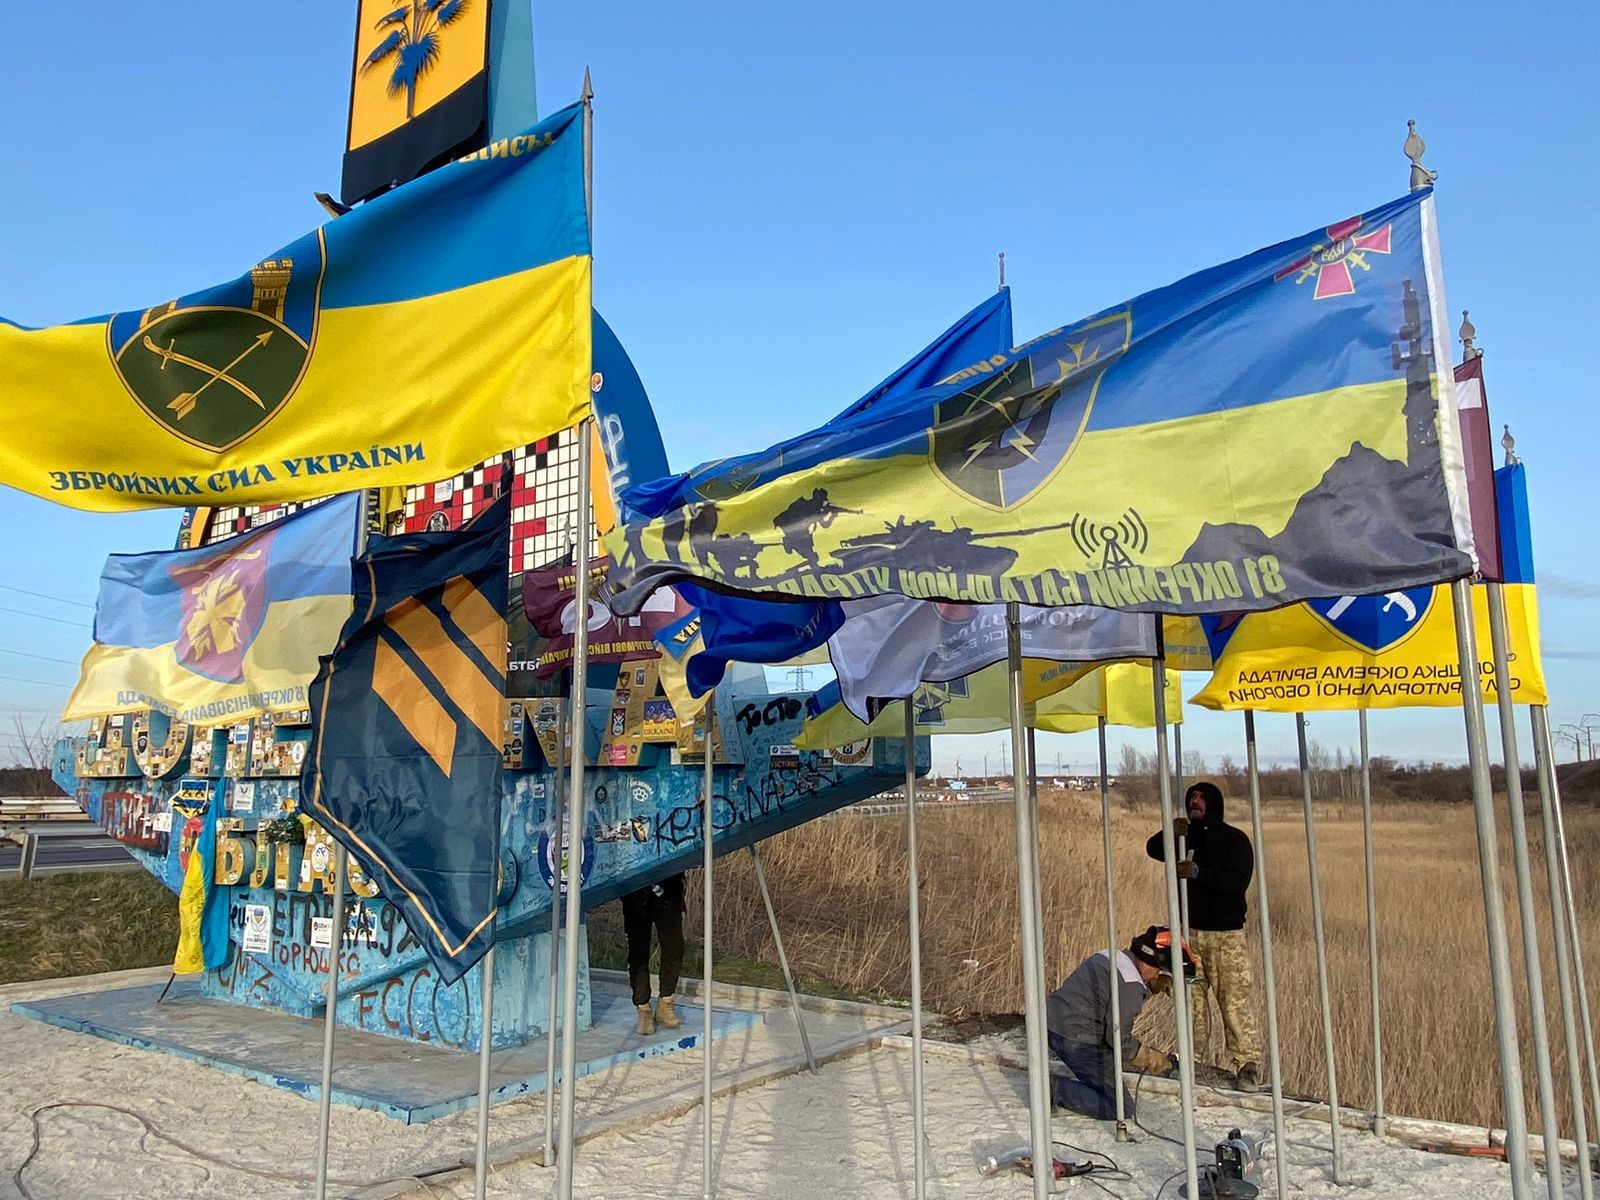 Біля стели у Донецькій області майорять прапори бригад військових